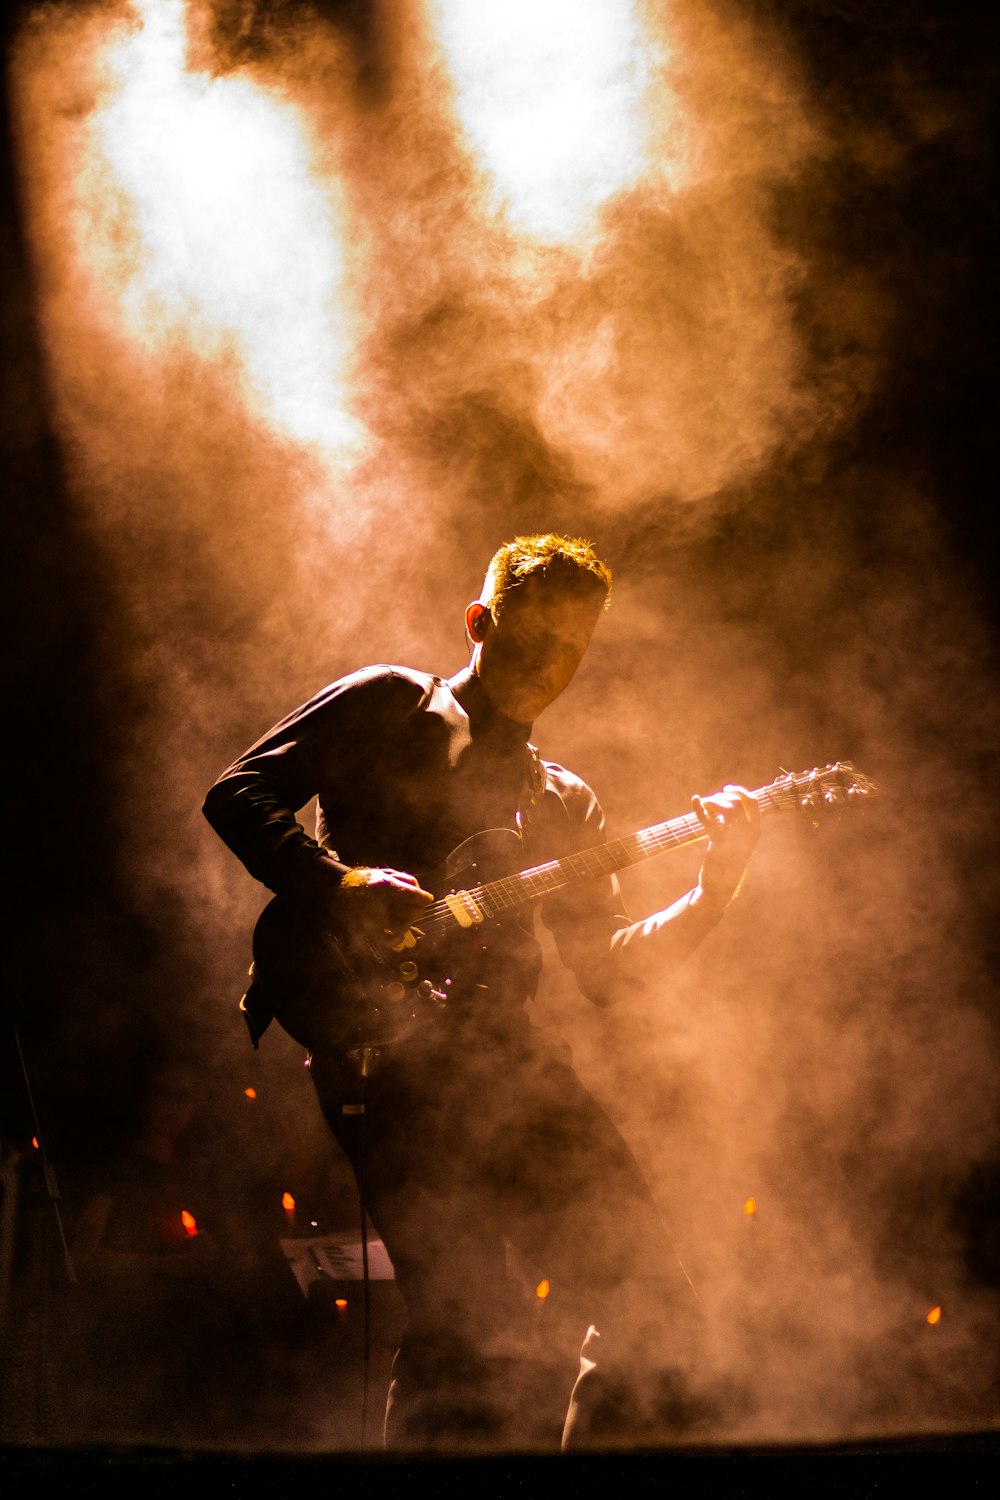 man playing guitar photograph